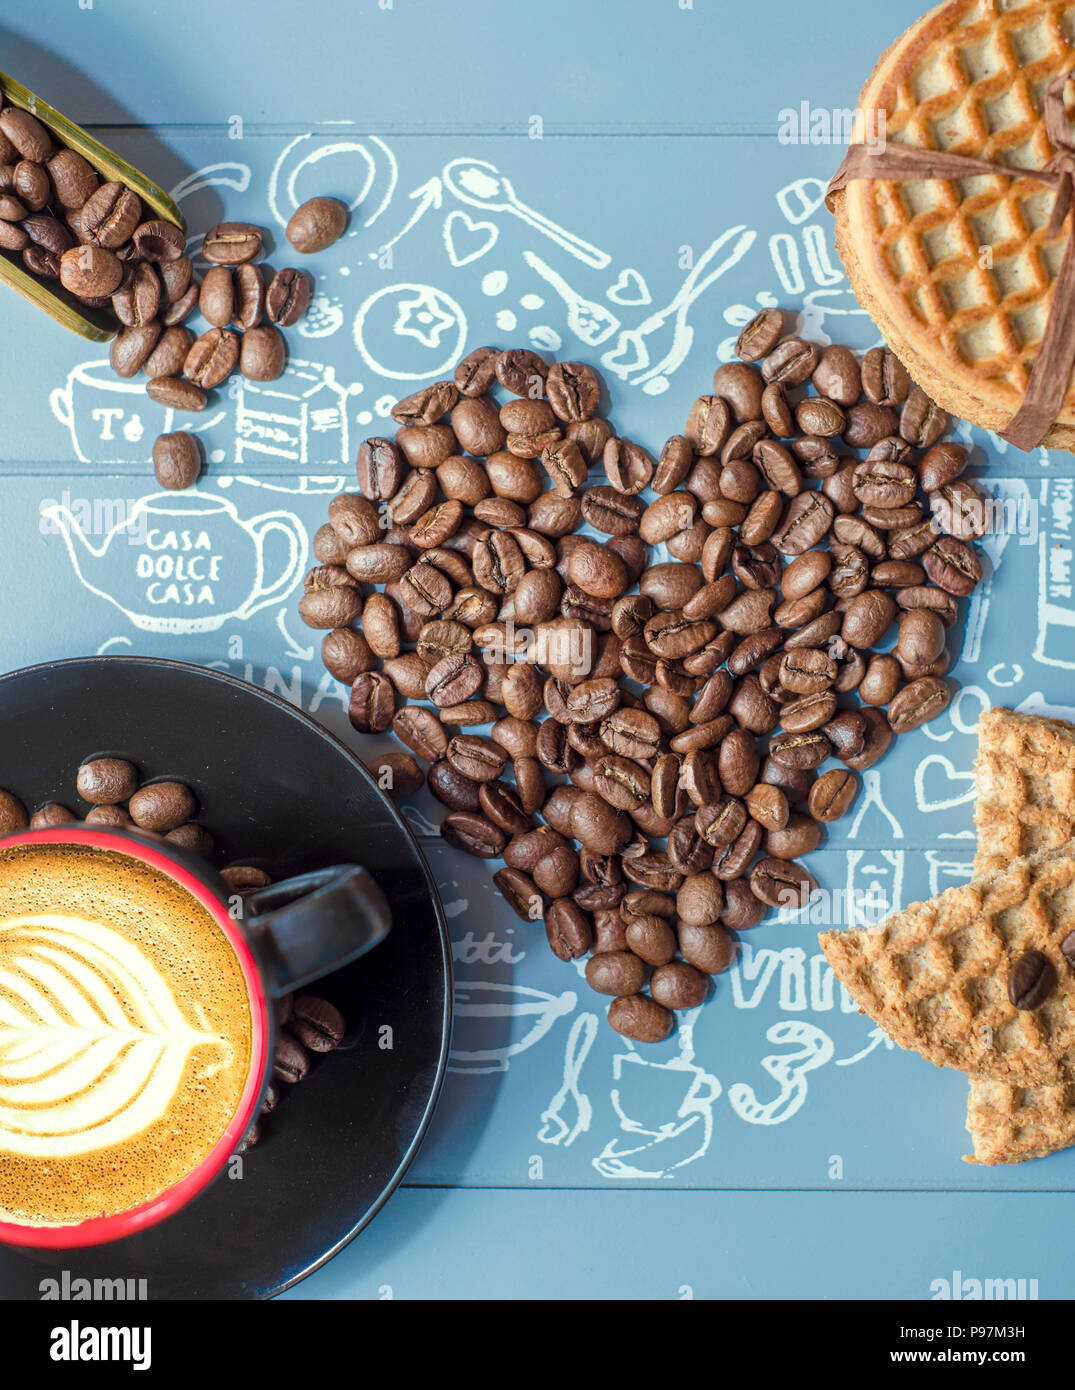 Una grande selezione di caffè gratuito stock foto. Trovare diversi tipi di quadri di caffè incluse immagini di tazze di caffè, tazze da caffè, caffè in grani Foto Stock